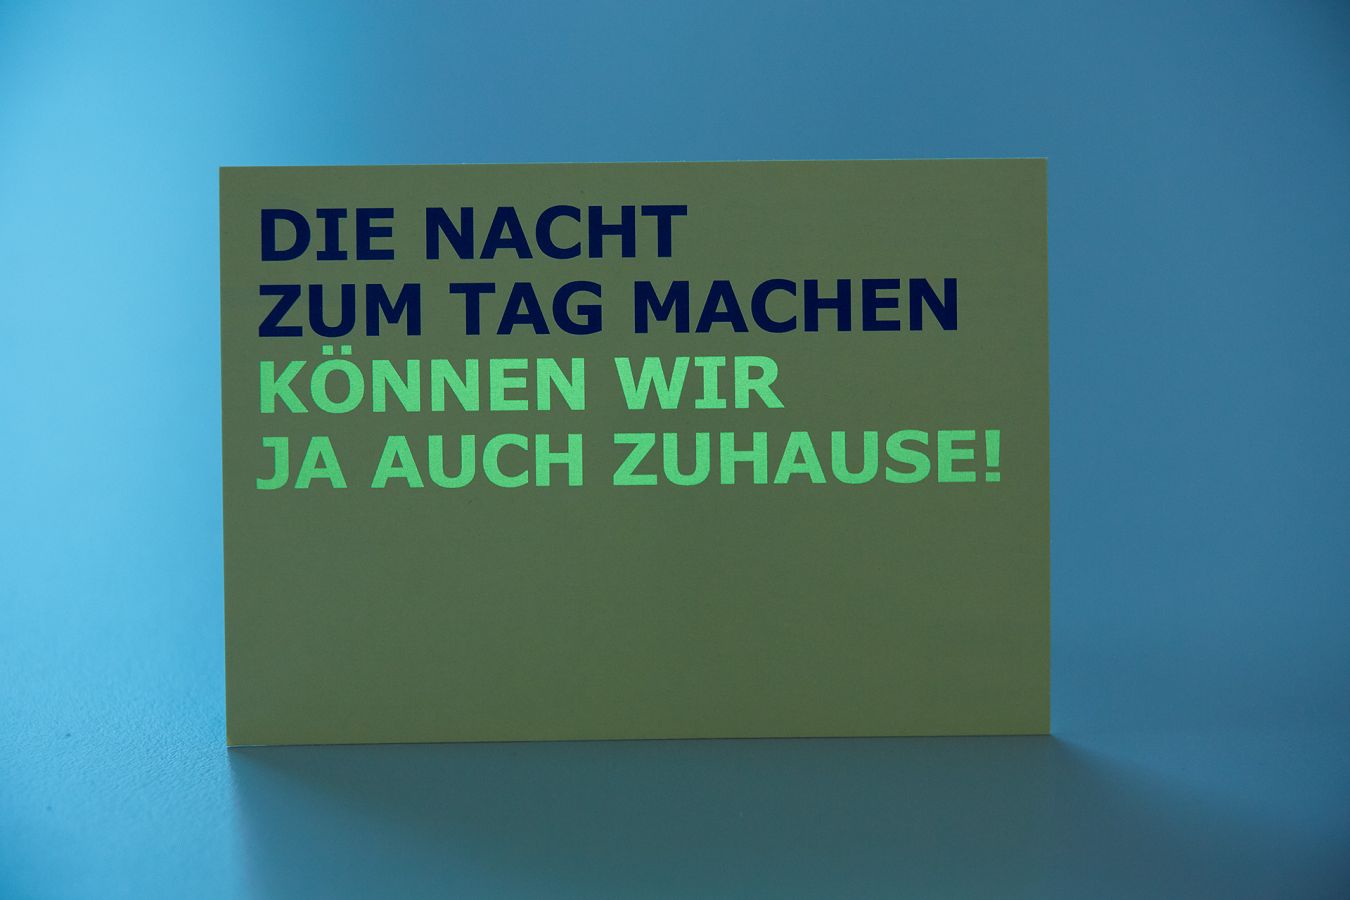 Leuchtkarten drucken lassen - Druckveredelung von Peichär in Salzburg